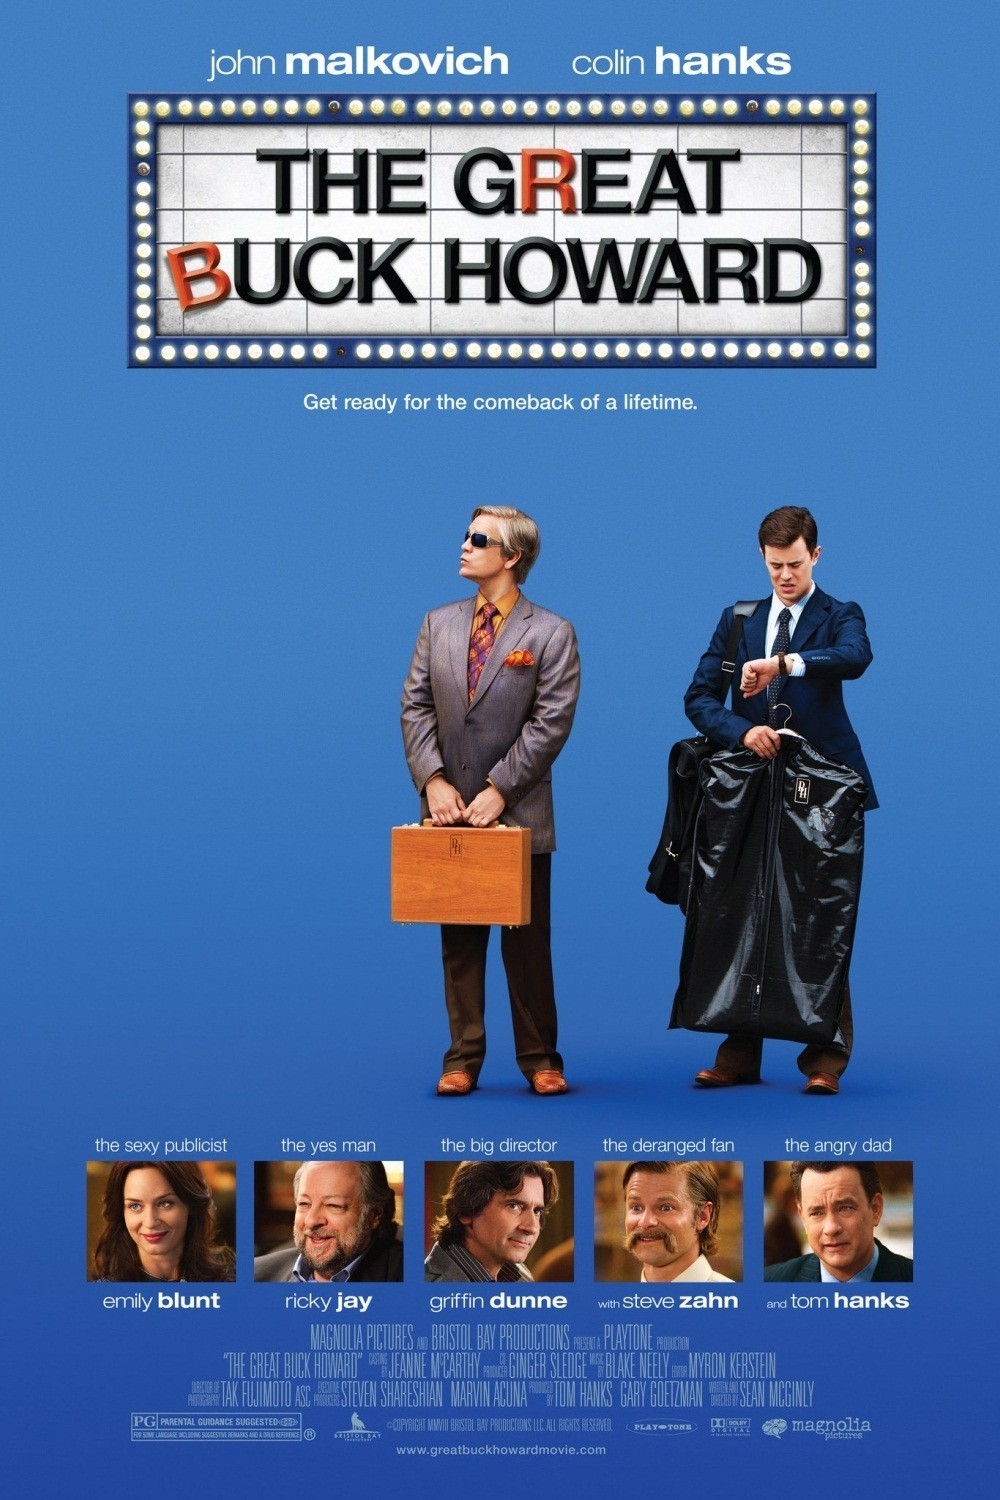 Великий Бак Ховард фильм (2008)